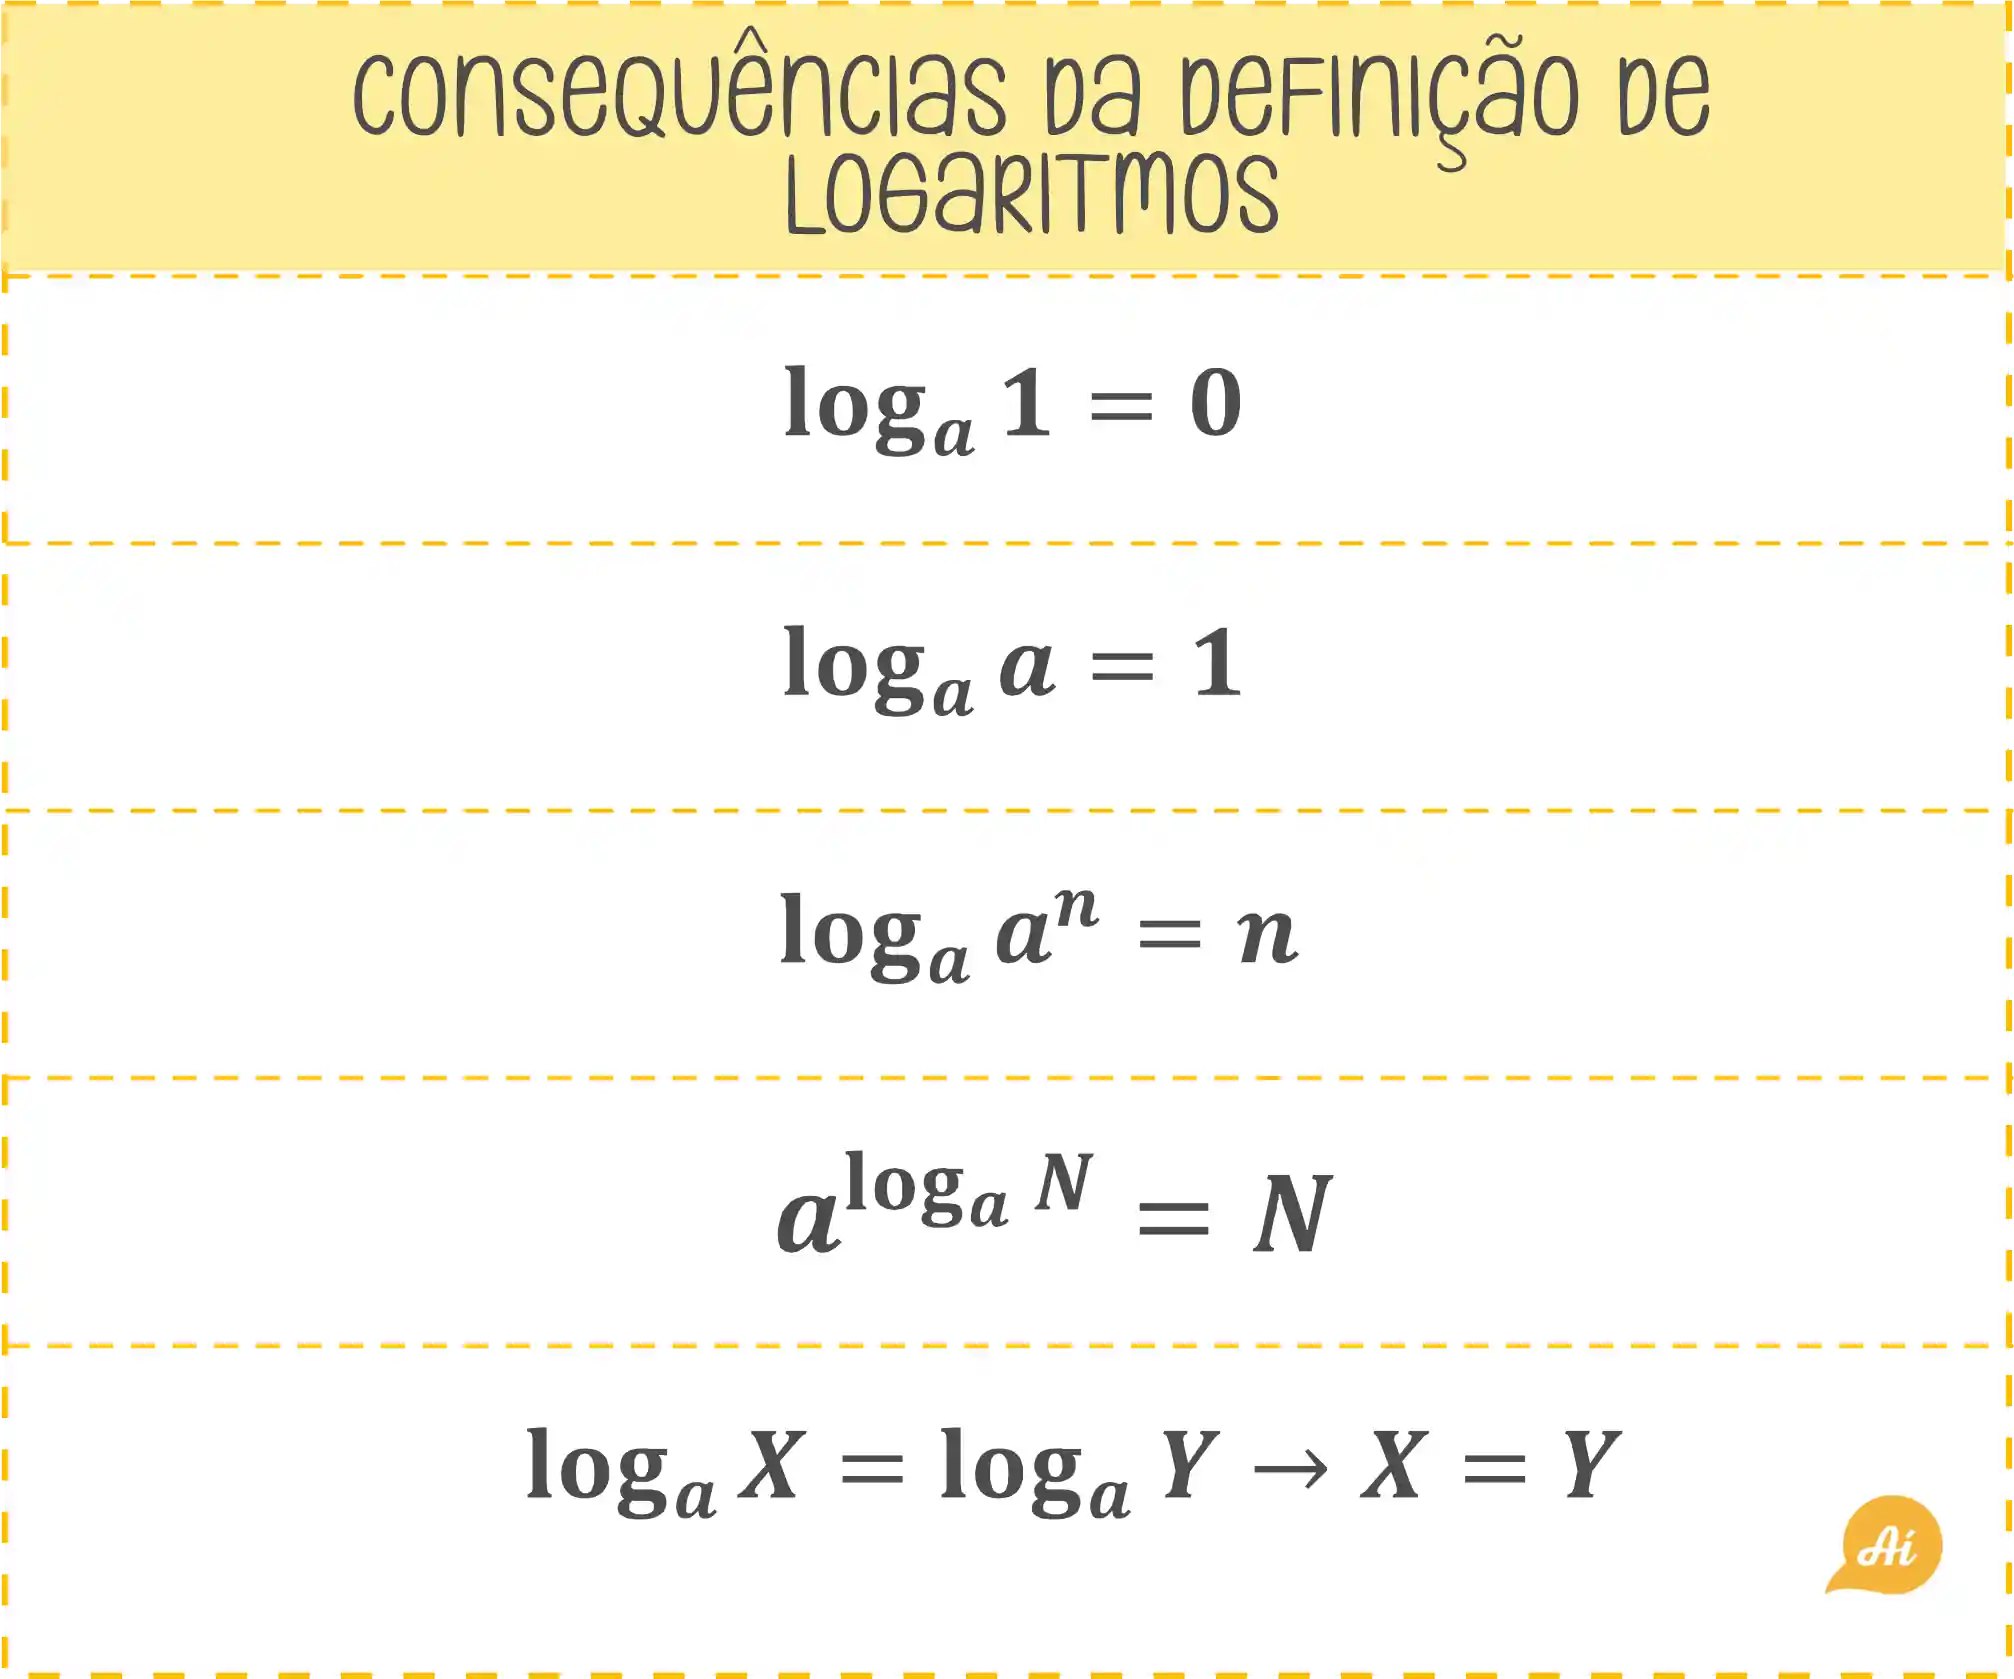 Consequências da definição de logaritmo.